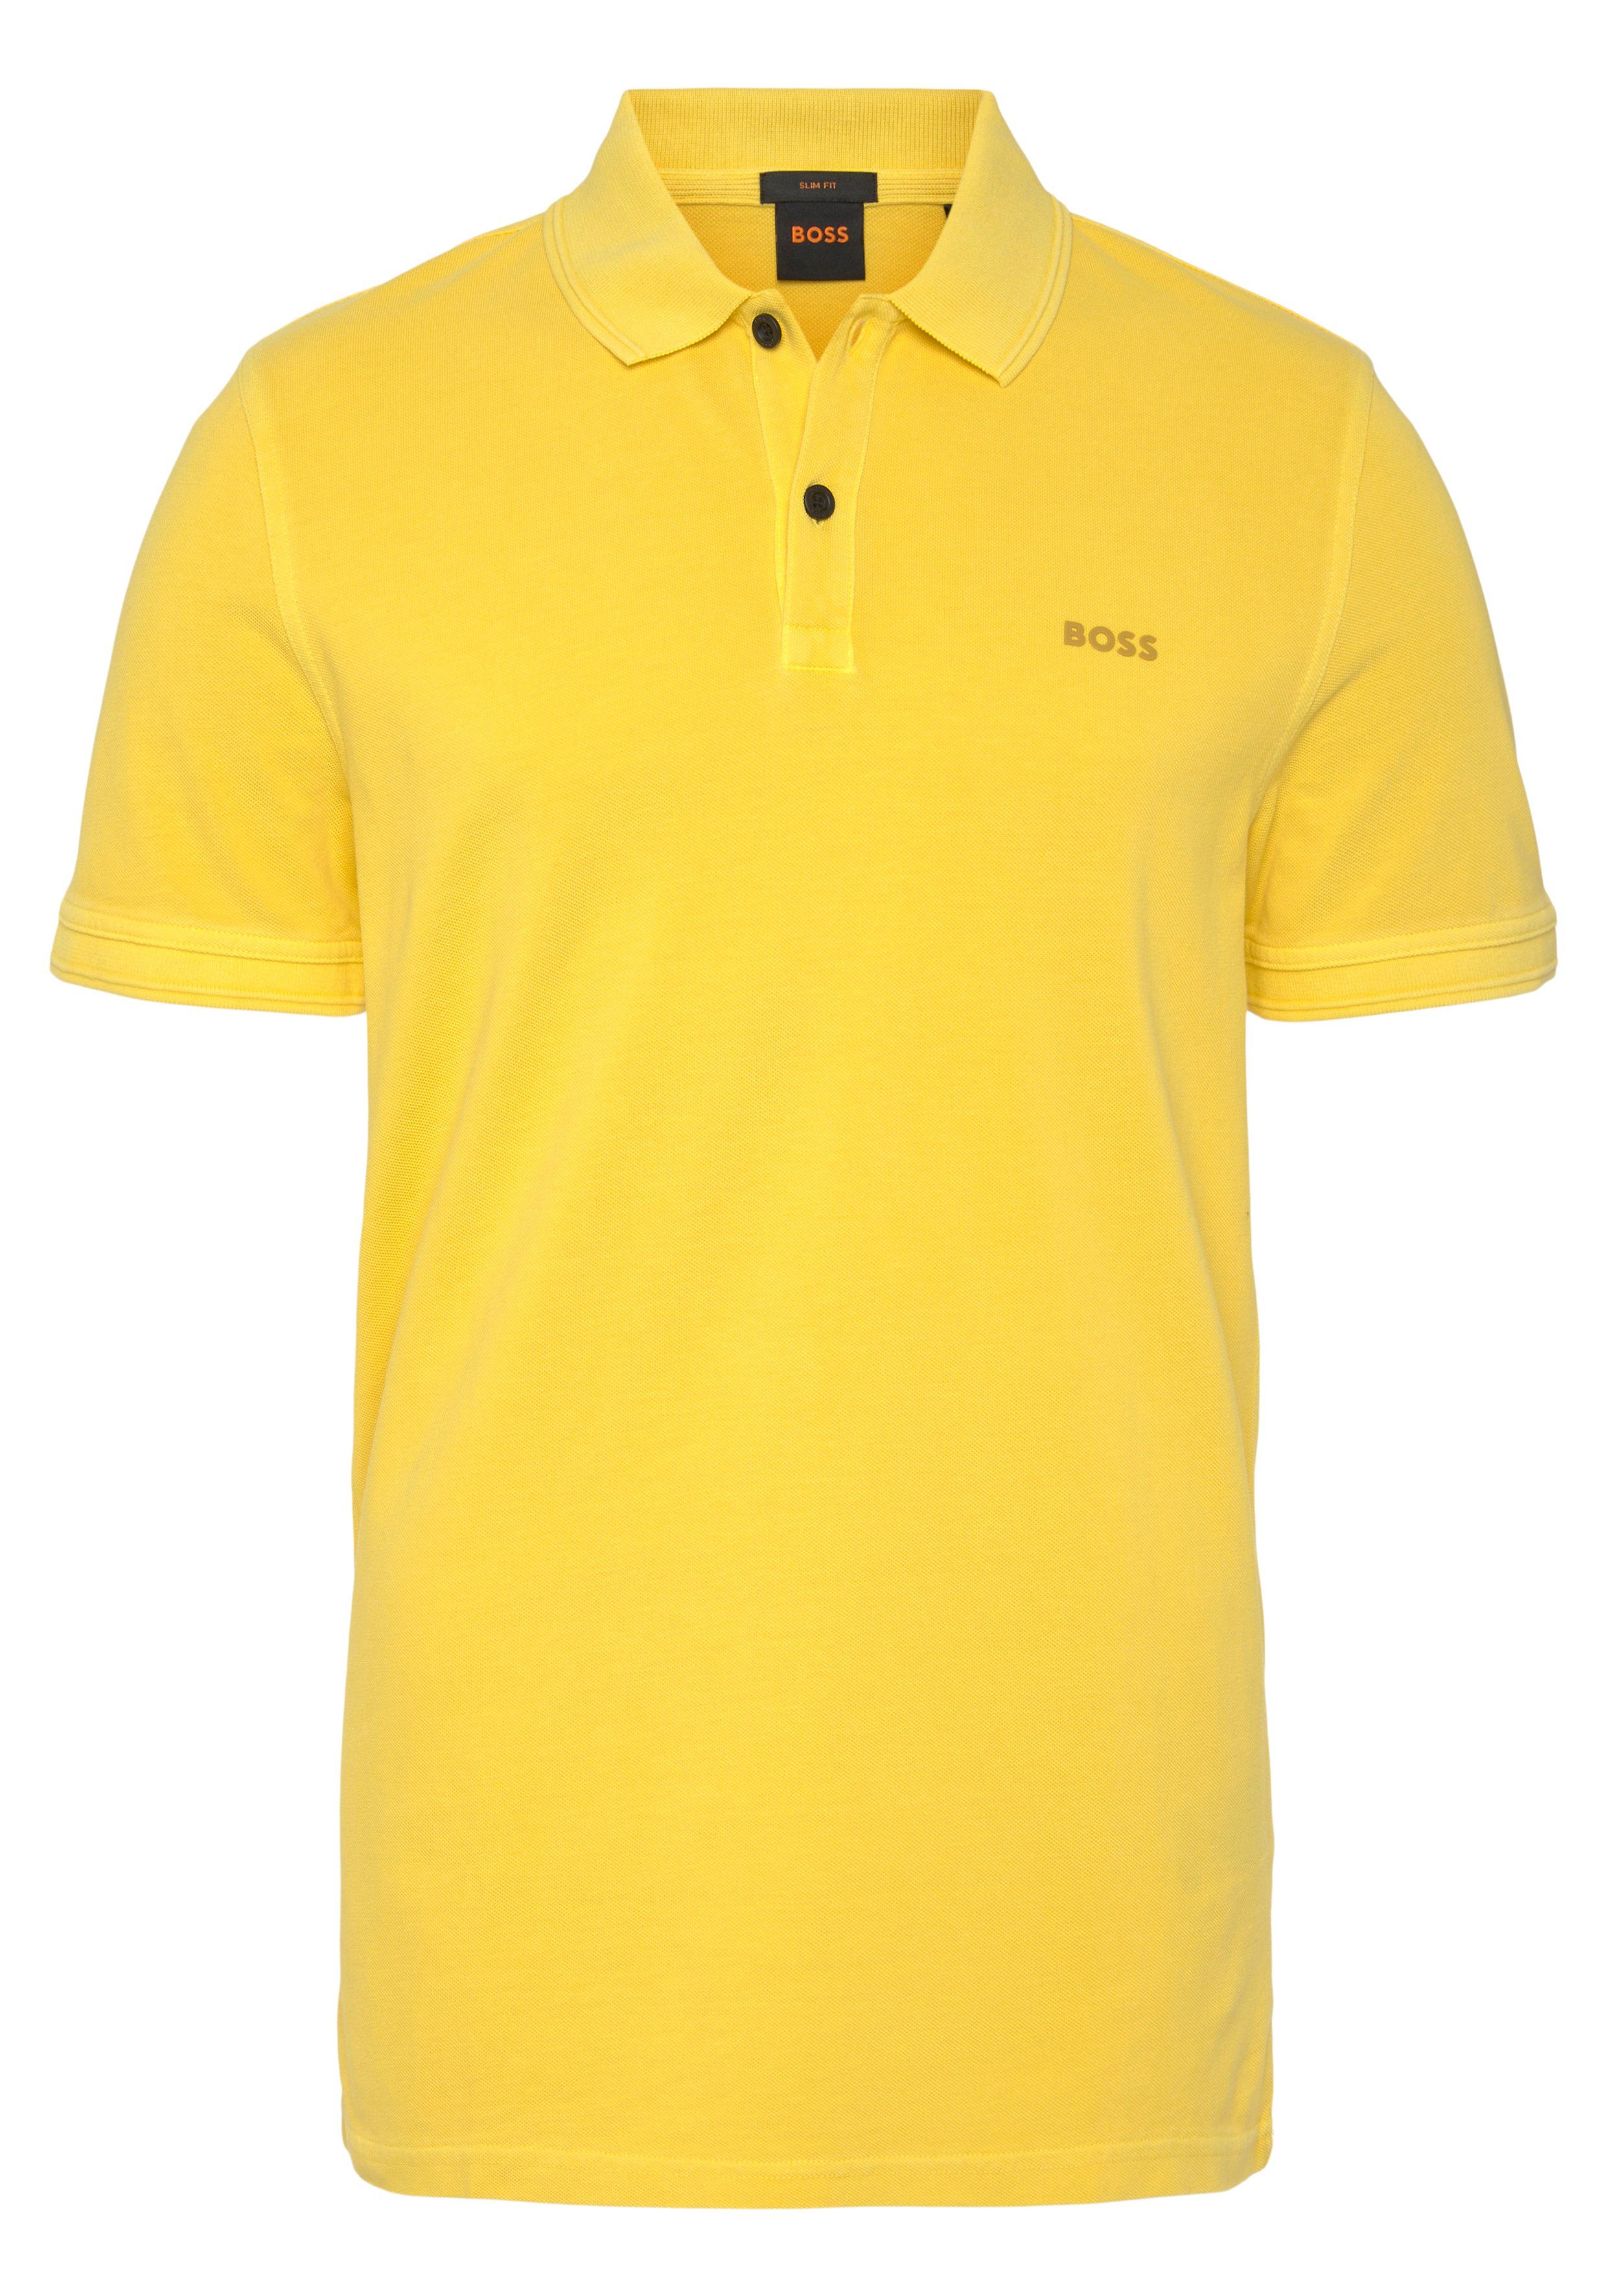 auf 10203439 Light/Pastel_Yellow dezentem Brust Logoschriftzug Prime 01 ORANGE BOSS der mit Poloshirt